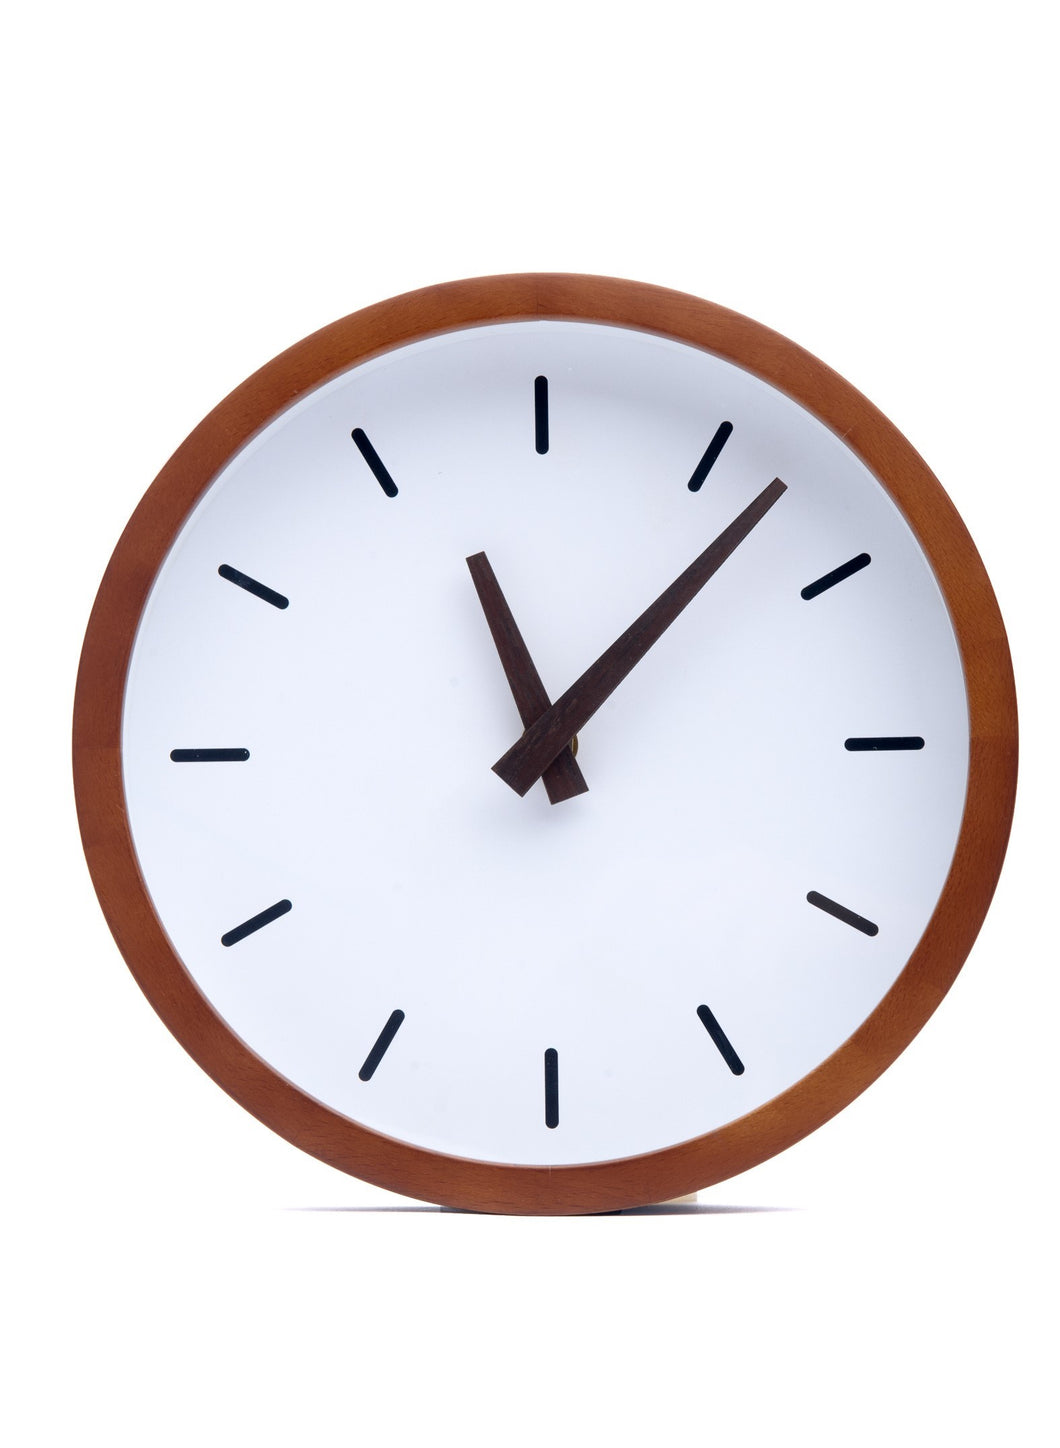 Driini Modern Wood Analog Wall Clock (9